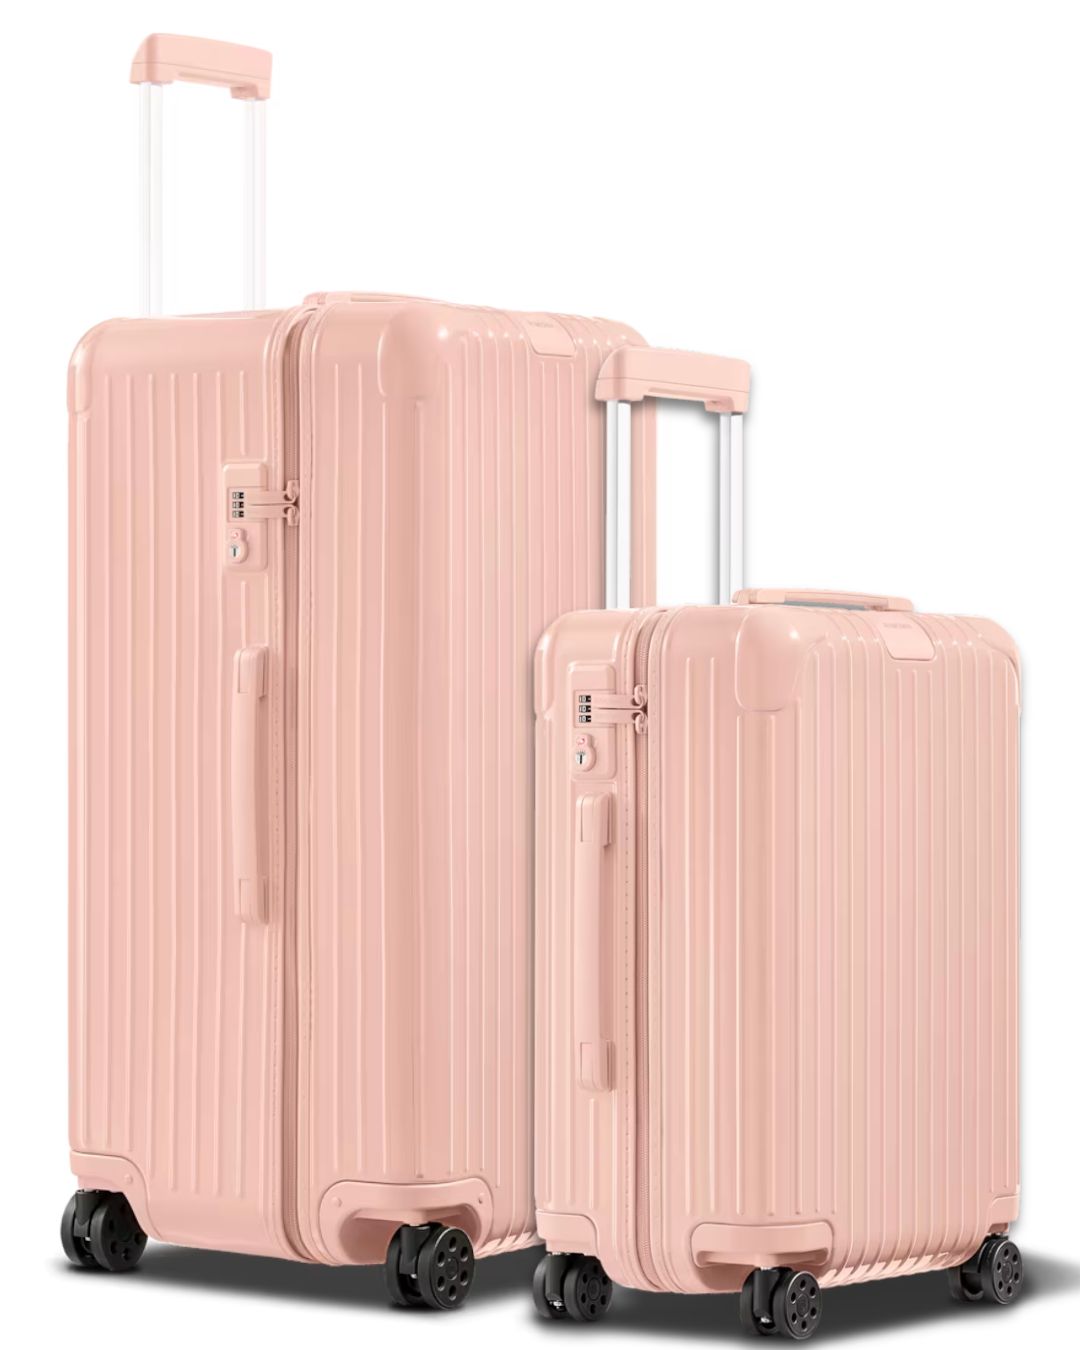 Лучшие комплекты чемоданов, которые вам точно понравятся